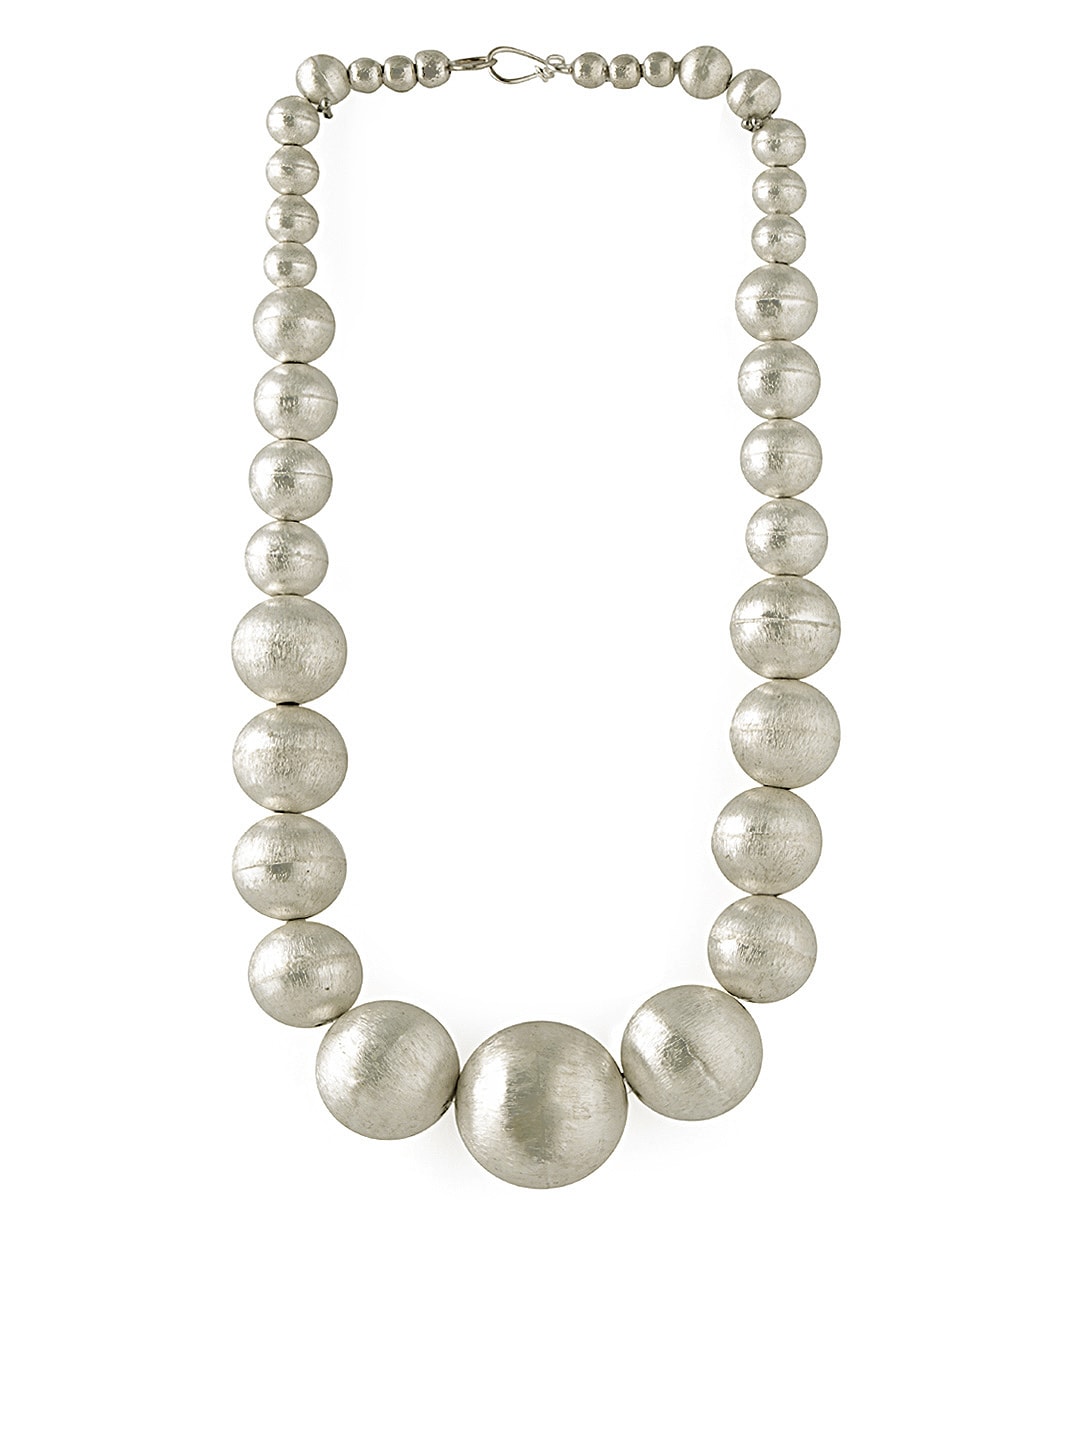 Pitaraa Silver Ball Necklace